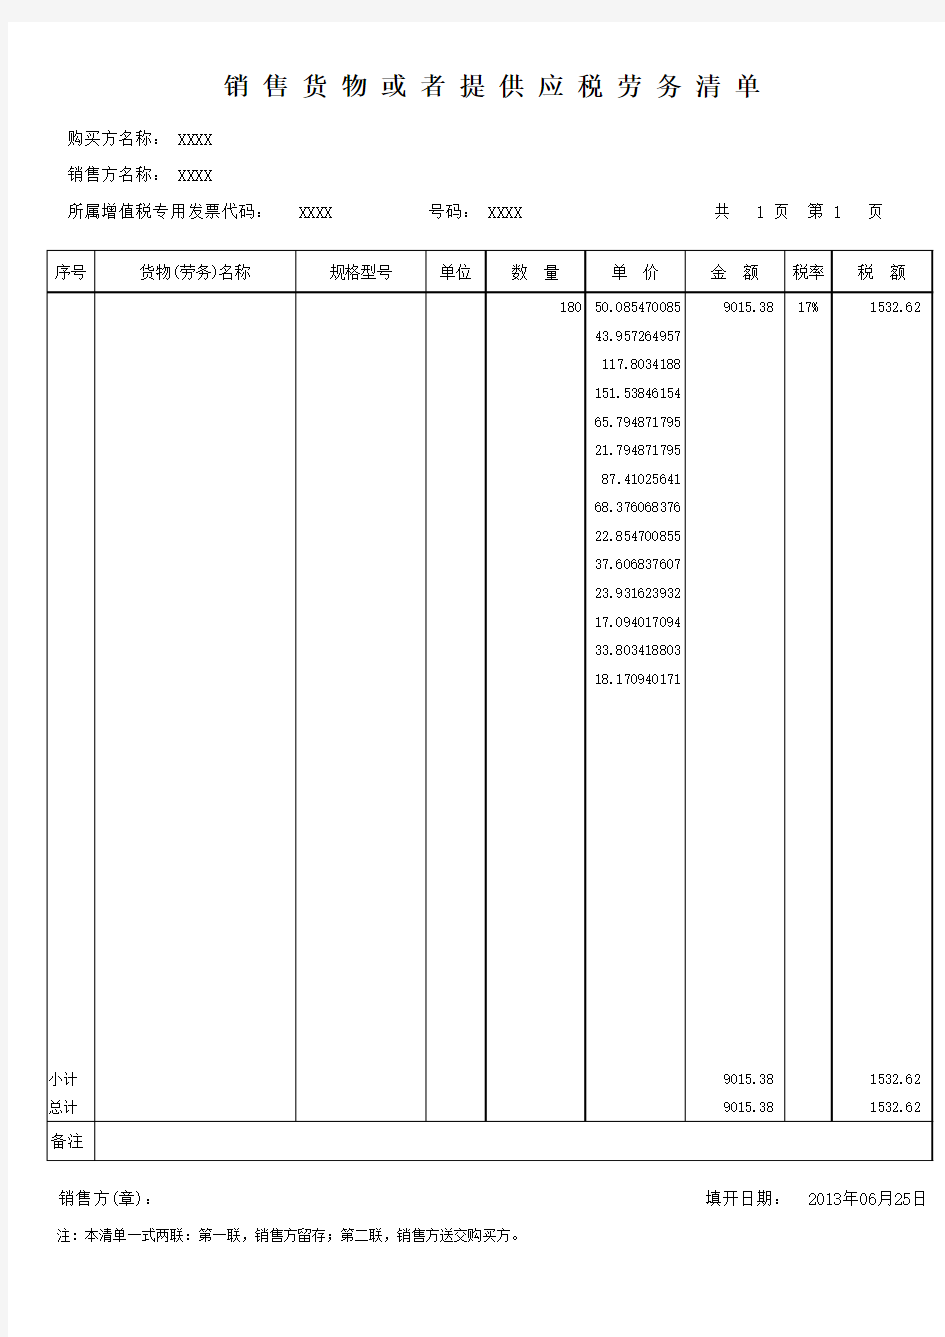 增值税发票销货清单(含计算公式)